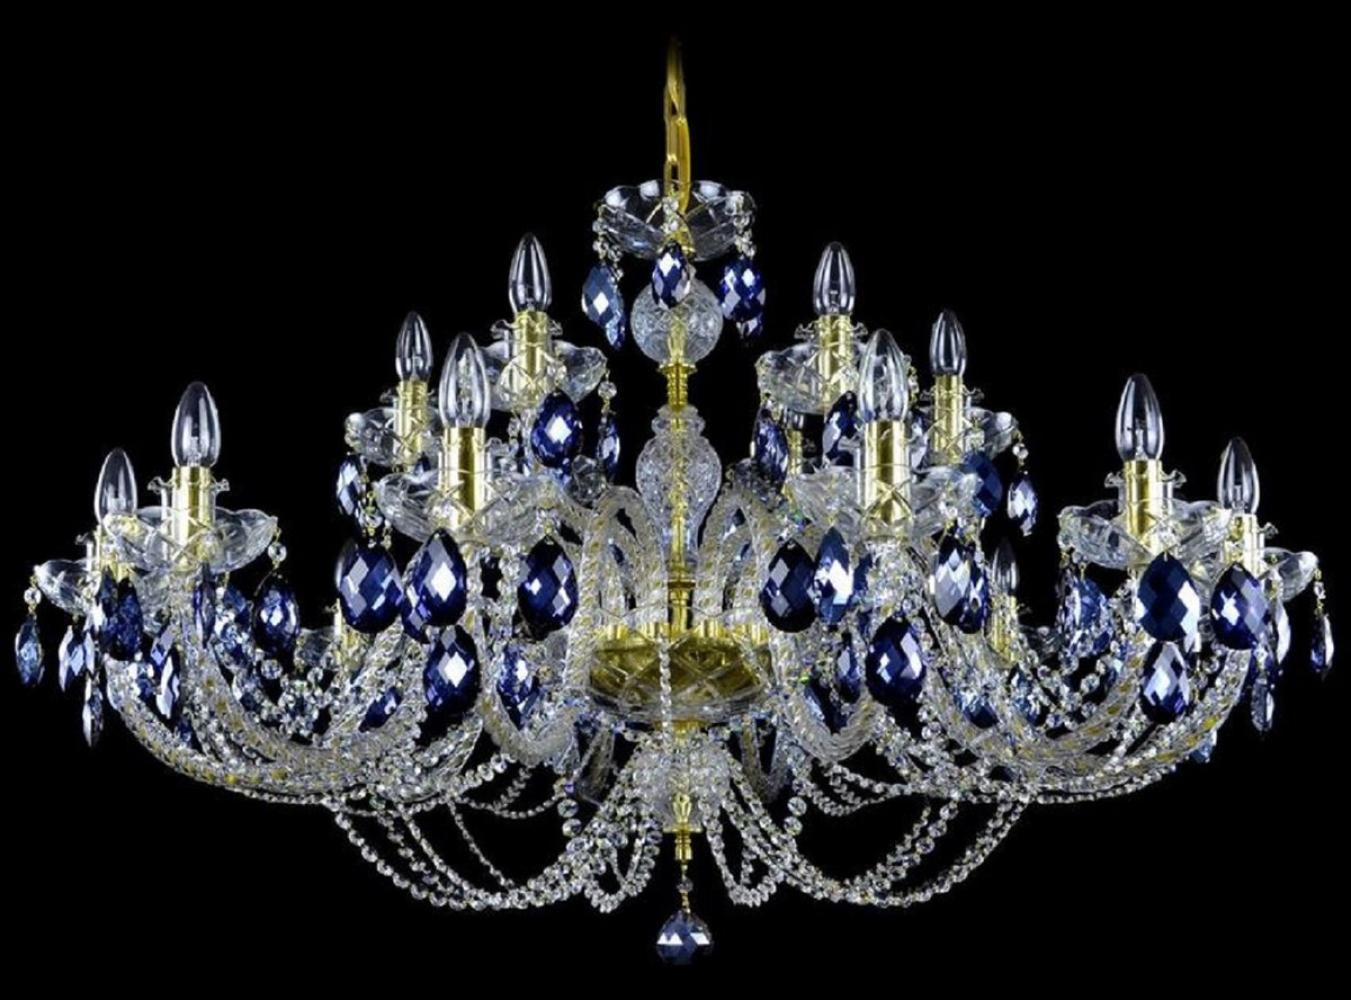 Casa Padrino Luxus Barock Kronleuchter Gold / Blau Ø 107 x H. 70 cm - Prunkvoller Barockstil Kronleuchter mit böhmischen Kristallglas - Edel & Prunkvoll Bild 1